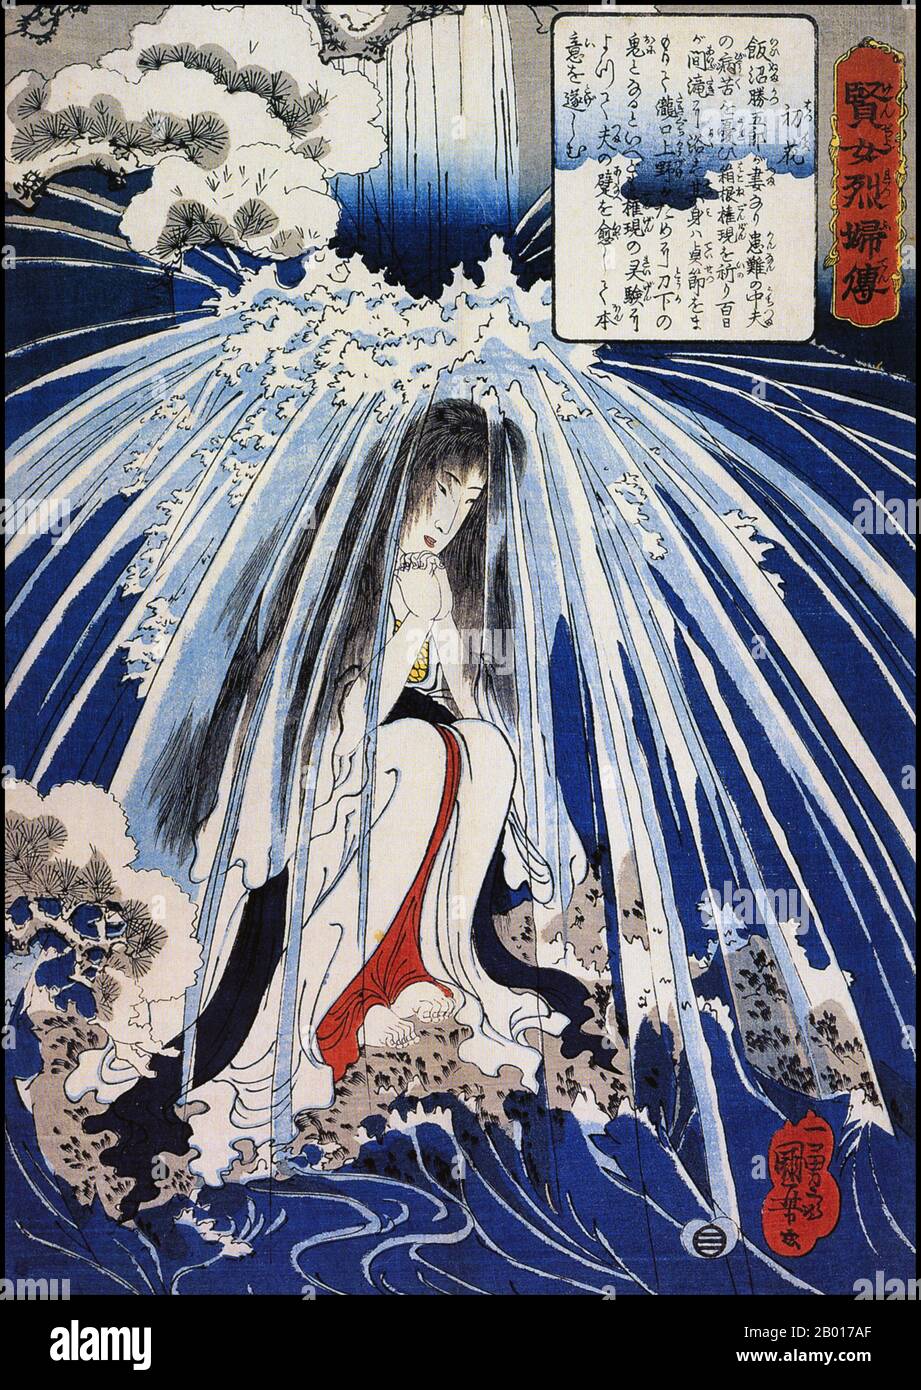 Japon: 'Hatsuhana faisant la pénitence sous la chute d'eau de Tonosawa'.Imprimé Ukiyo-e par Utagawa Kuniyoshi (1 janvier 1798 - 14 avril 1861), ch.1841-1842.Utagawa Kuniyoshi a été l'un des derniers grands maîtres du style ukiyo-e japonais d'imprimés et de peinture de blocs de bois.Il est associé à l'école Utagawa.La gamme des sujets préférés de Kuniyoshi comprenait de nombreux genres : paysages, belles femmes, acteurs Kabuki, chats et animaux mythiques.Il est connu pour les représentations des batailles des samouraïs et des héros légendaires.Son œuvre a été affectée par les influences occidentales. Banque D'Images